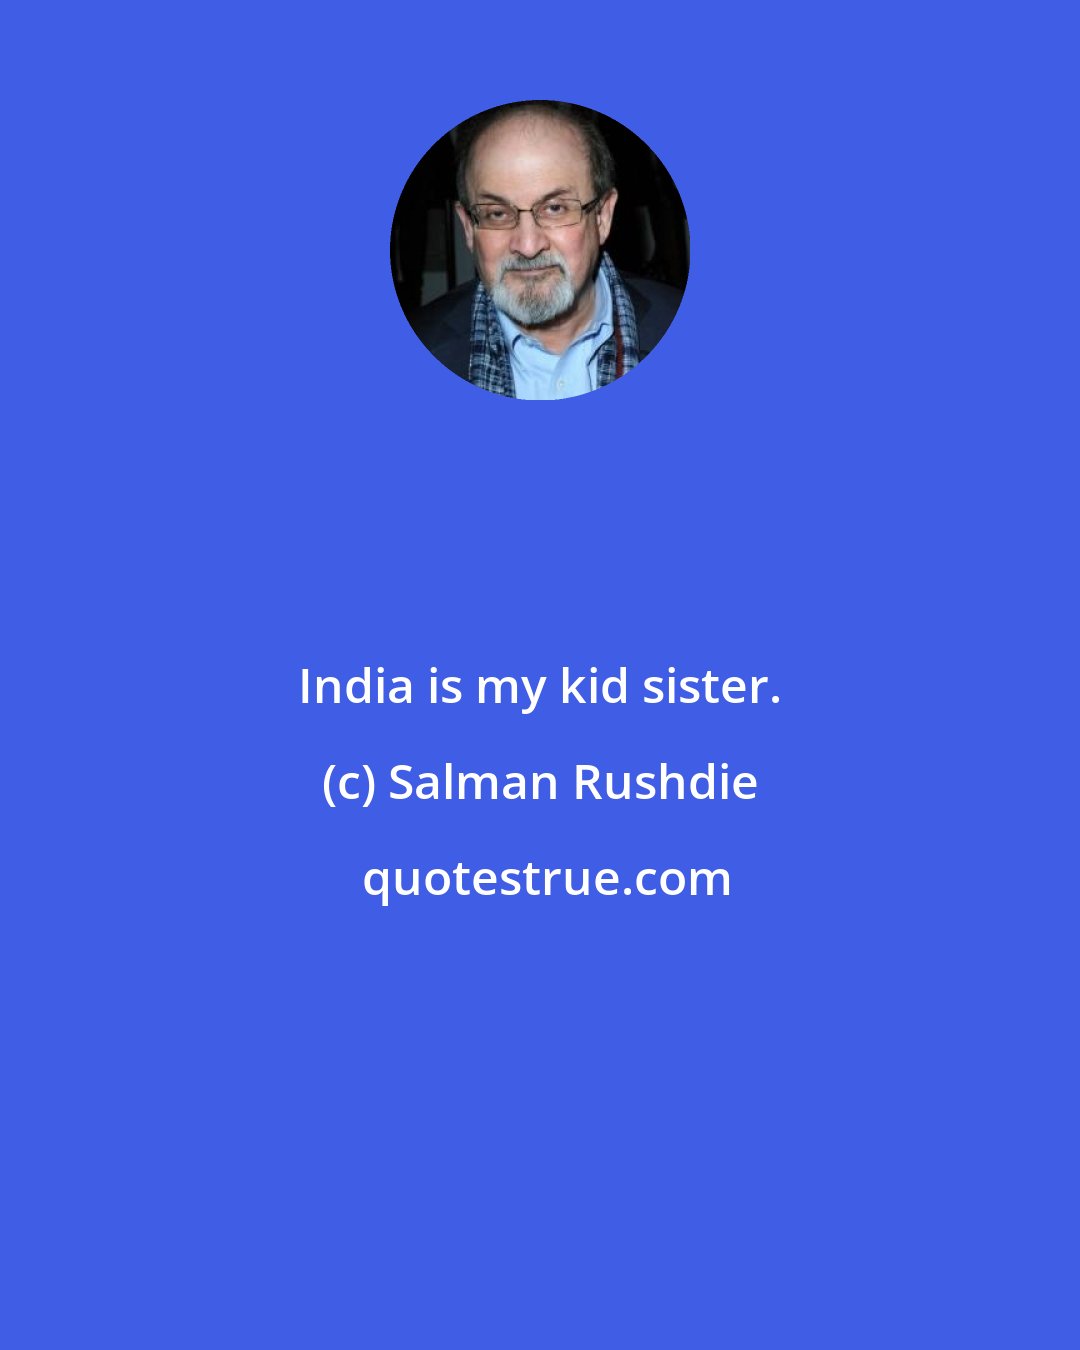 Salman Rushdie: India is my kid sister.